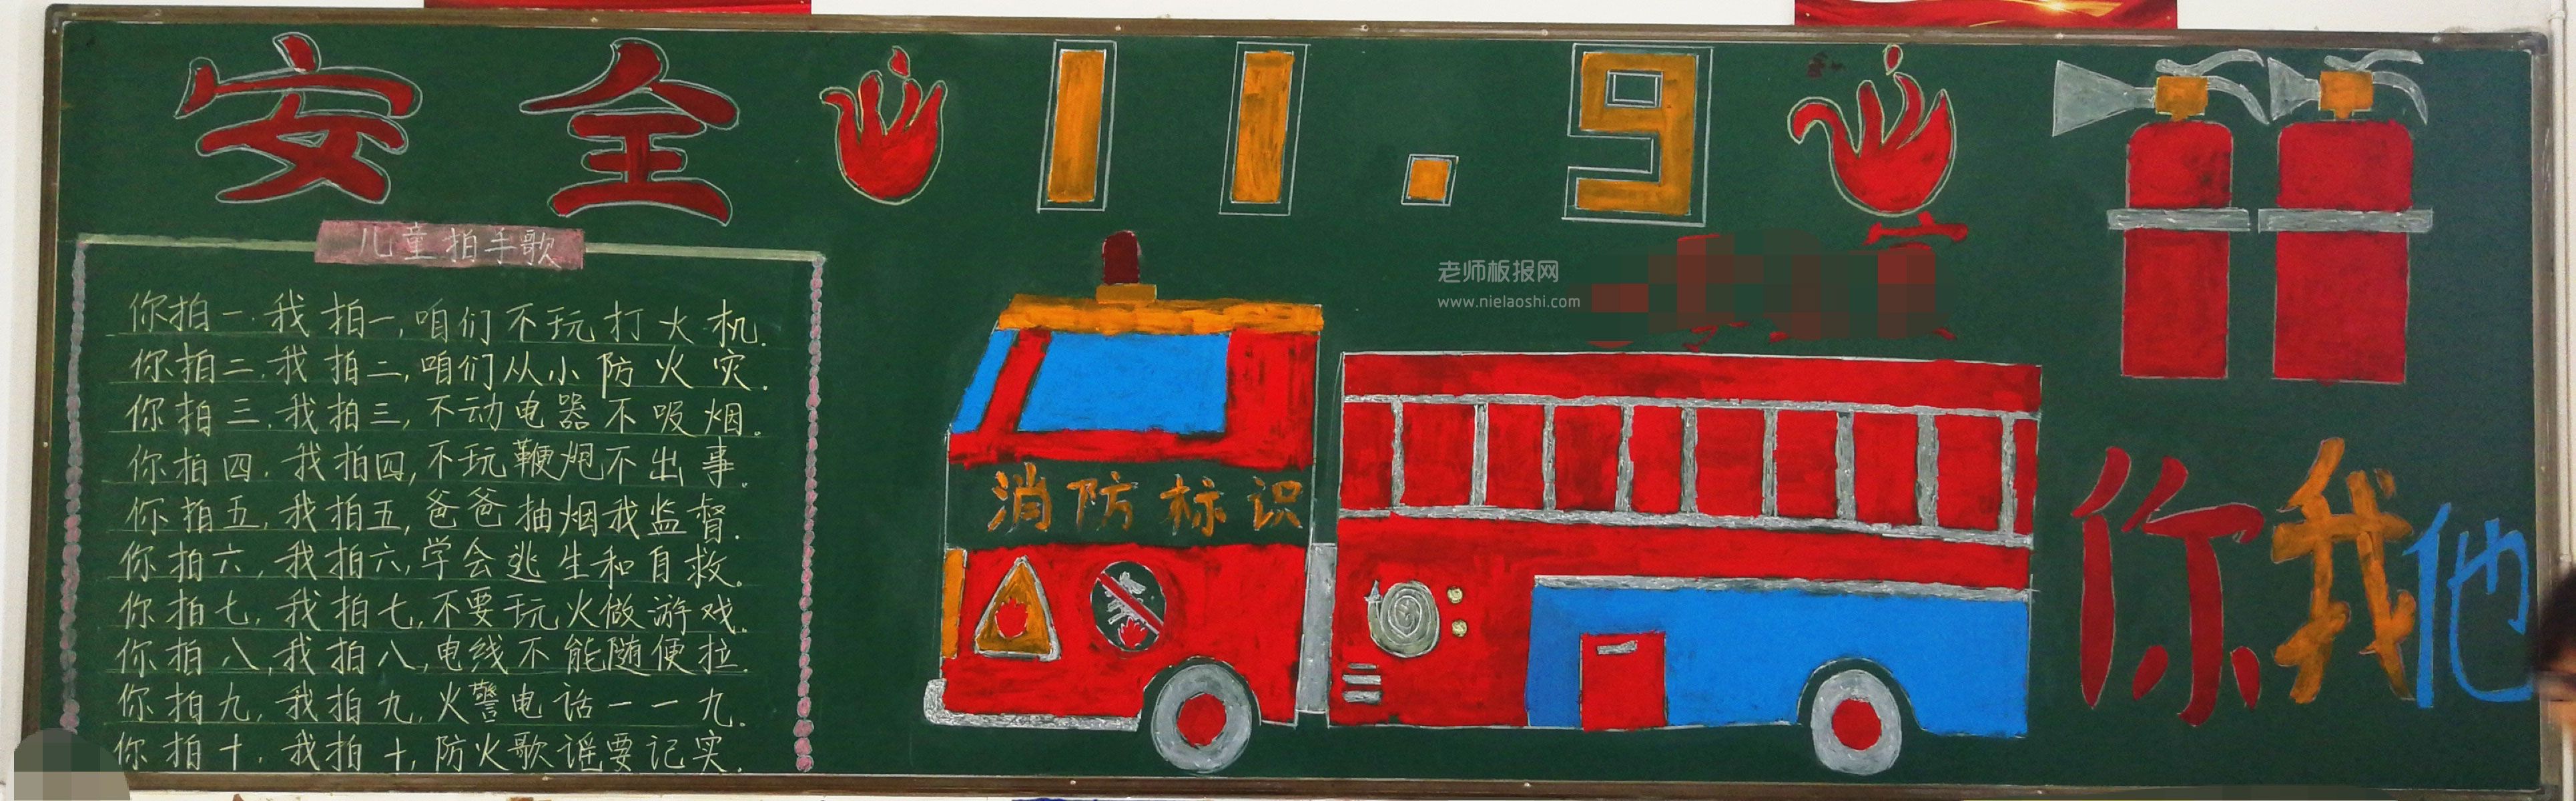 119消防安全黑板报图片